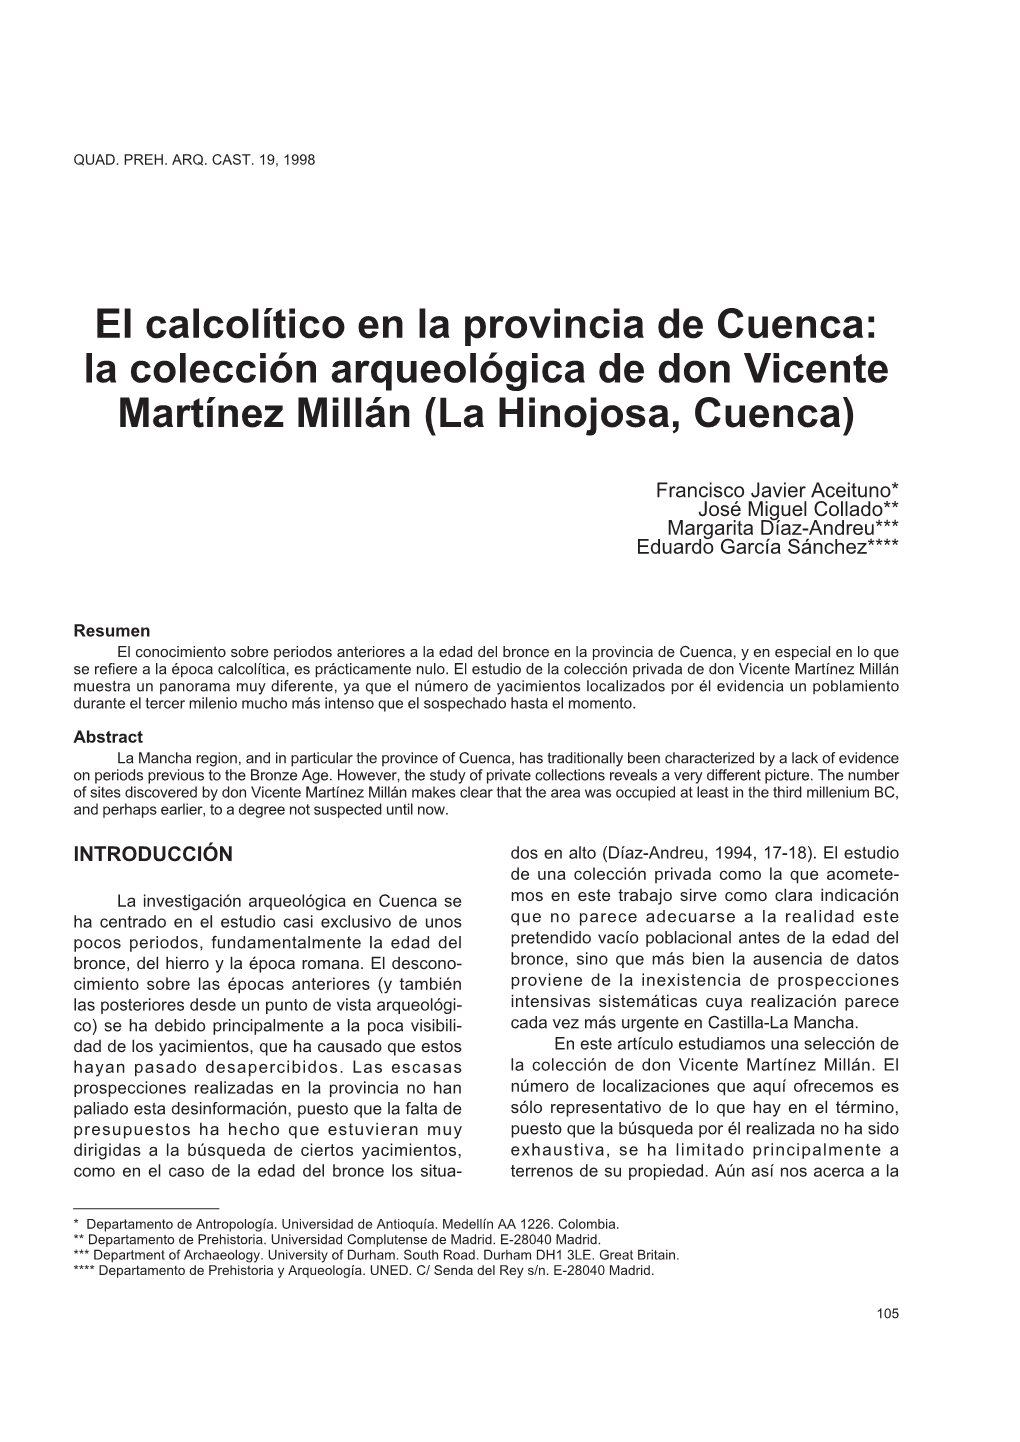 El Calcolítico En La Provincia De Cuenca: La Colección Arqueológica De Don Vicente Martínez Millán (La Hinojosa, Cuenca)